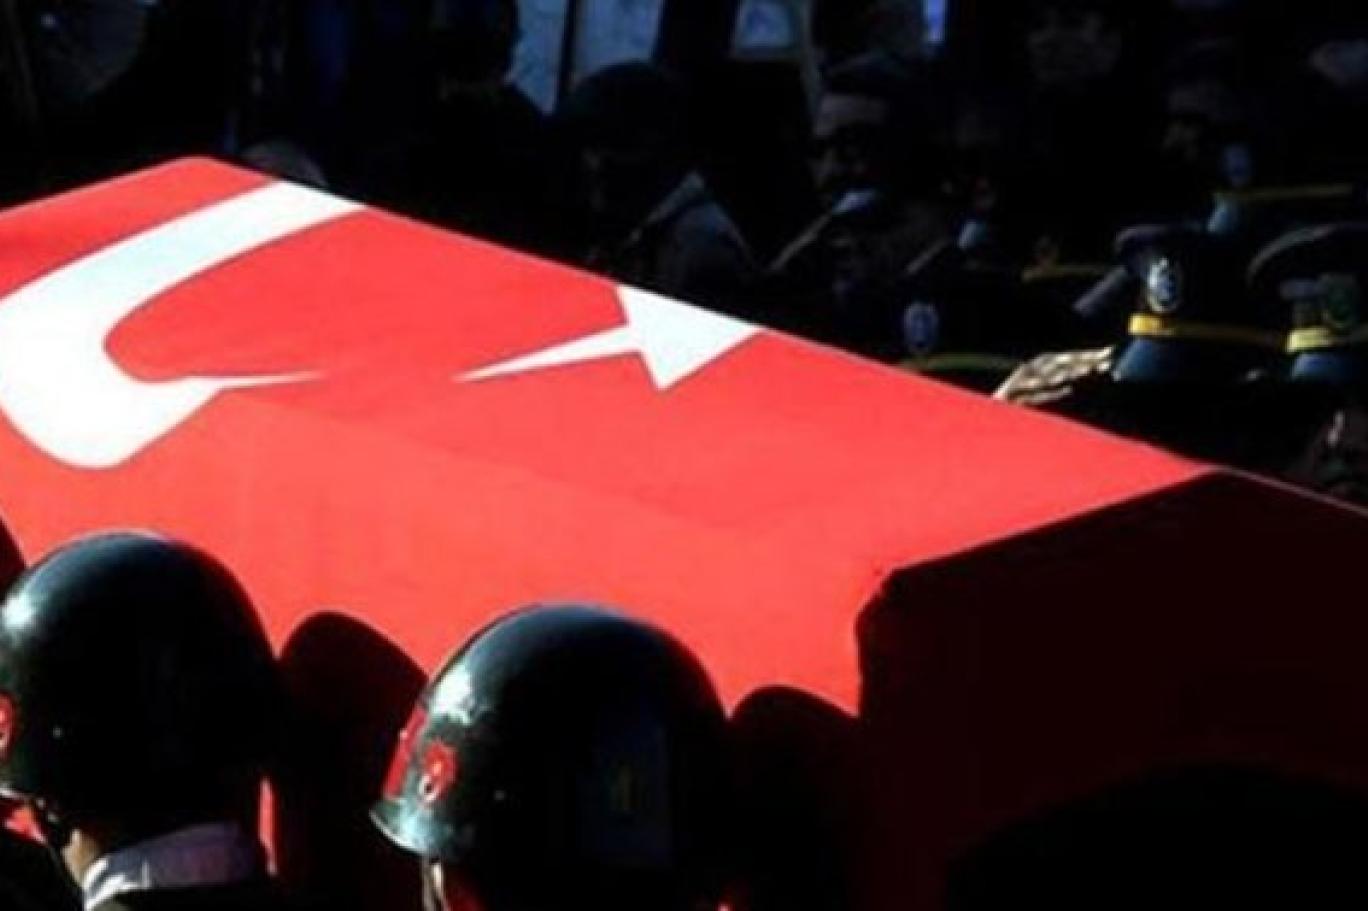 Şırnak'tan acı haber: 1 askerimiz şehit oldu!